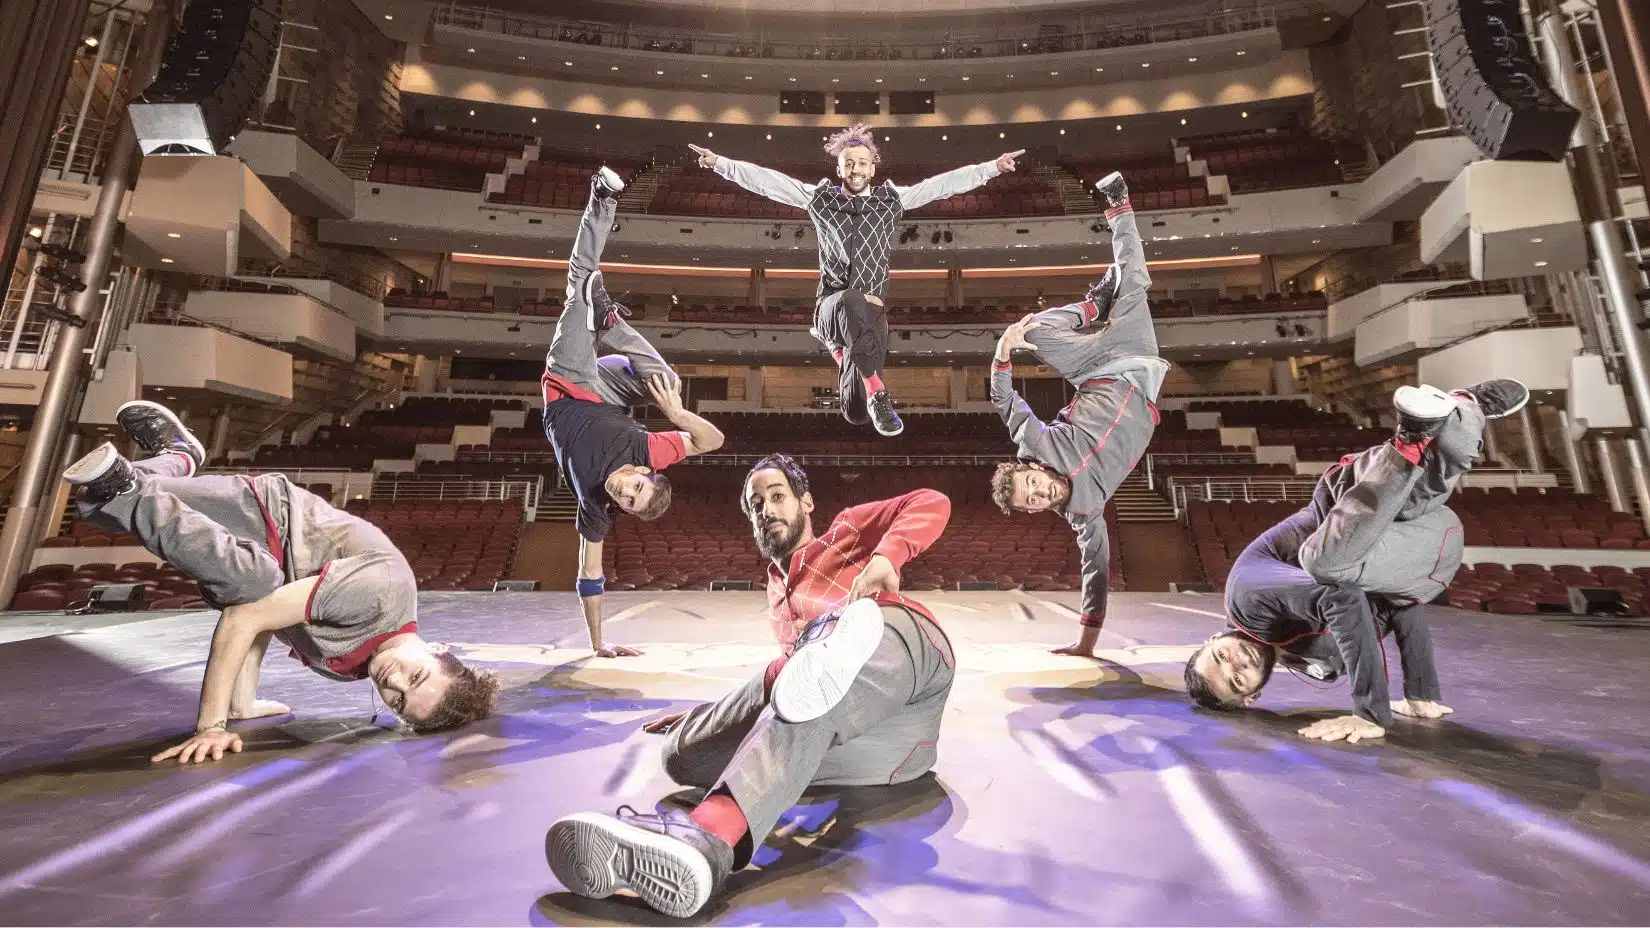 Die 4-maligen Breakdance Weltmeister Flying Steps kommen an Bord der Mein Schiff 7.
Fotograf: Carlo Cruz